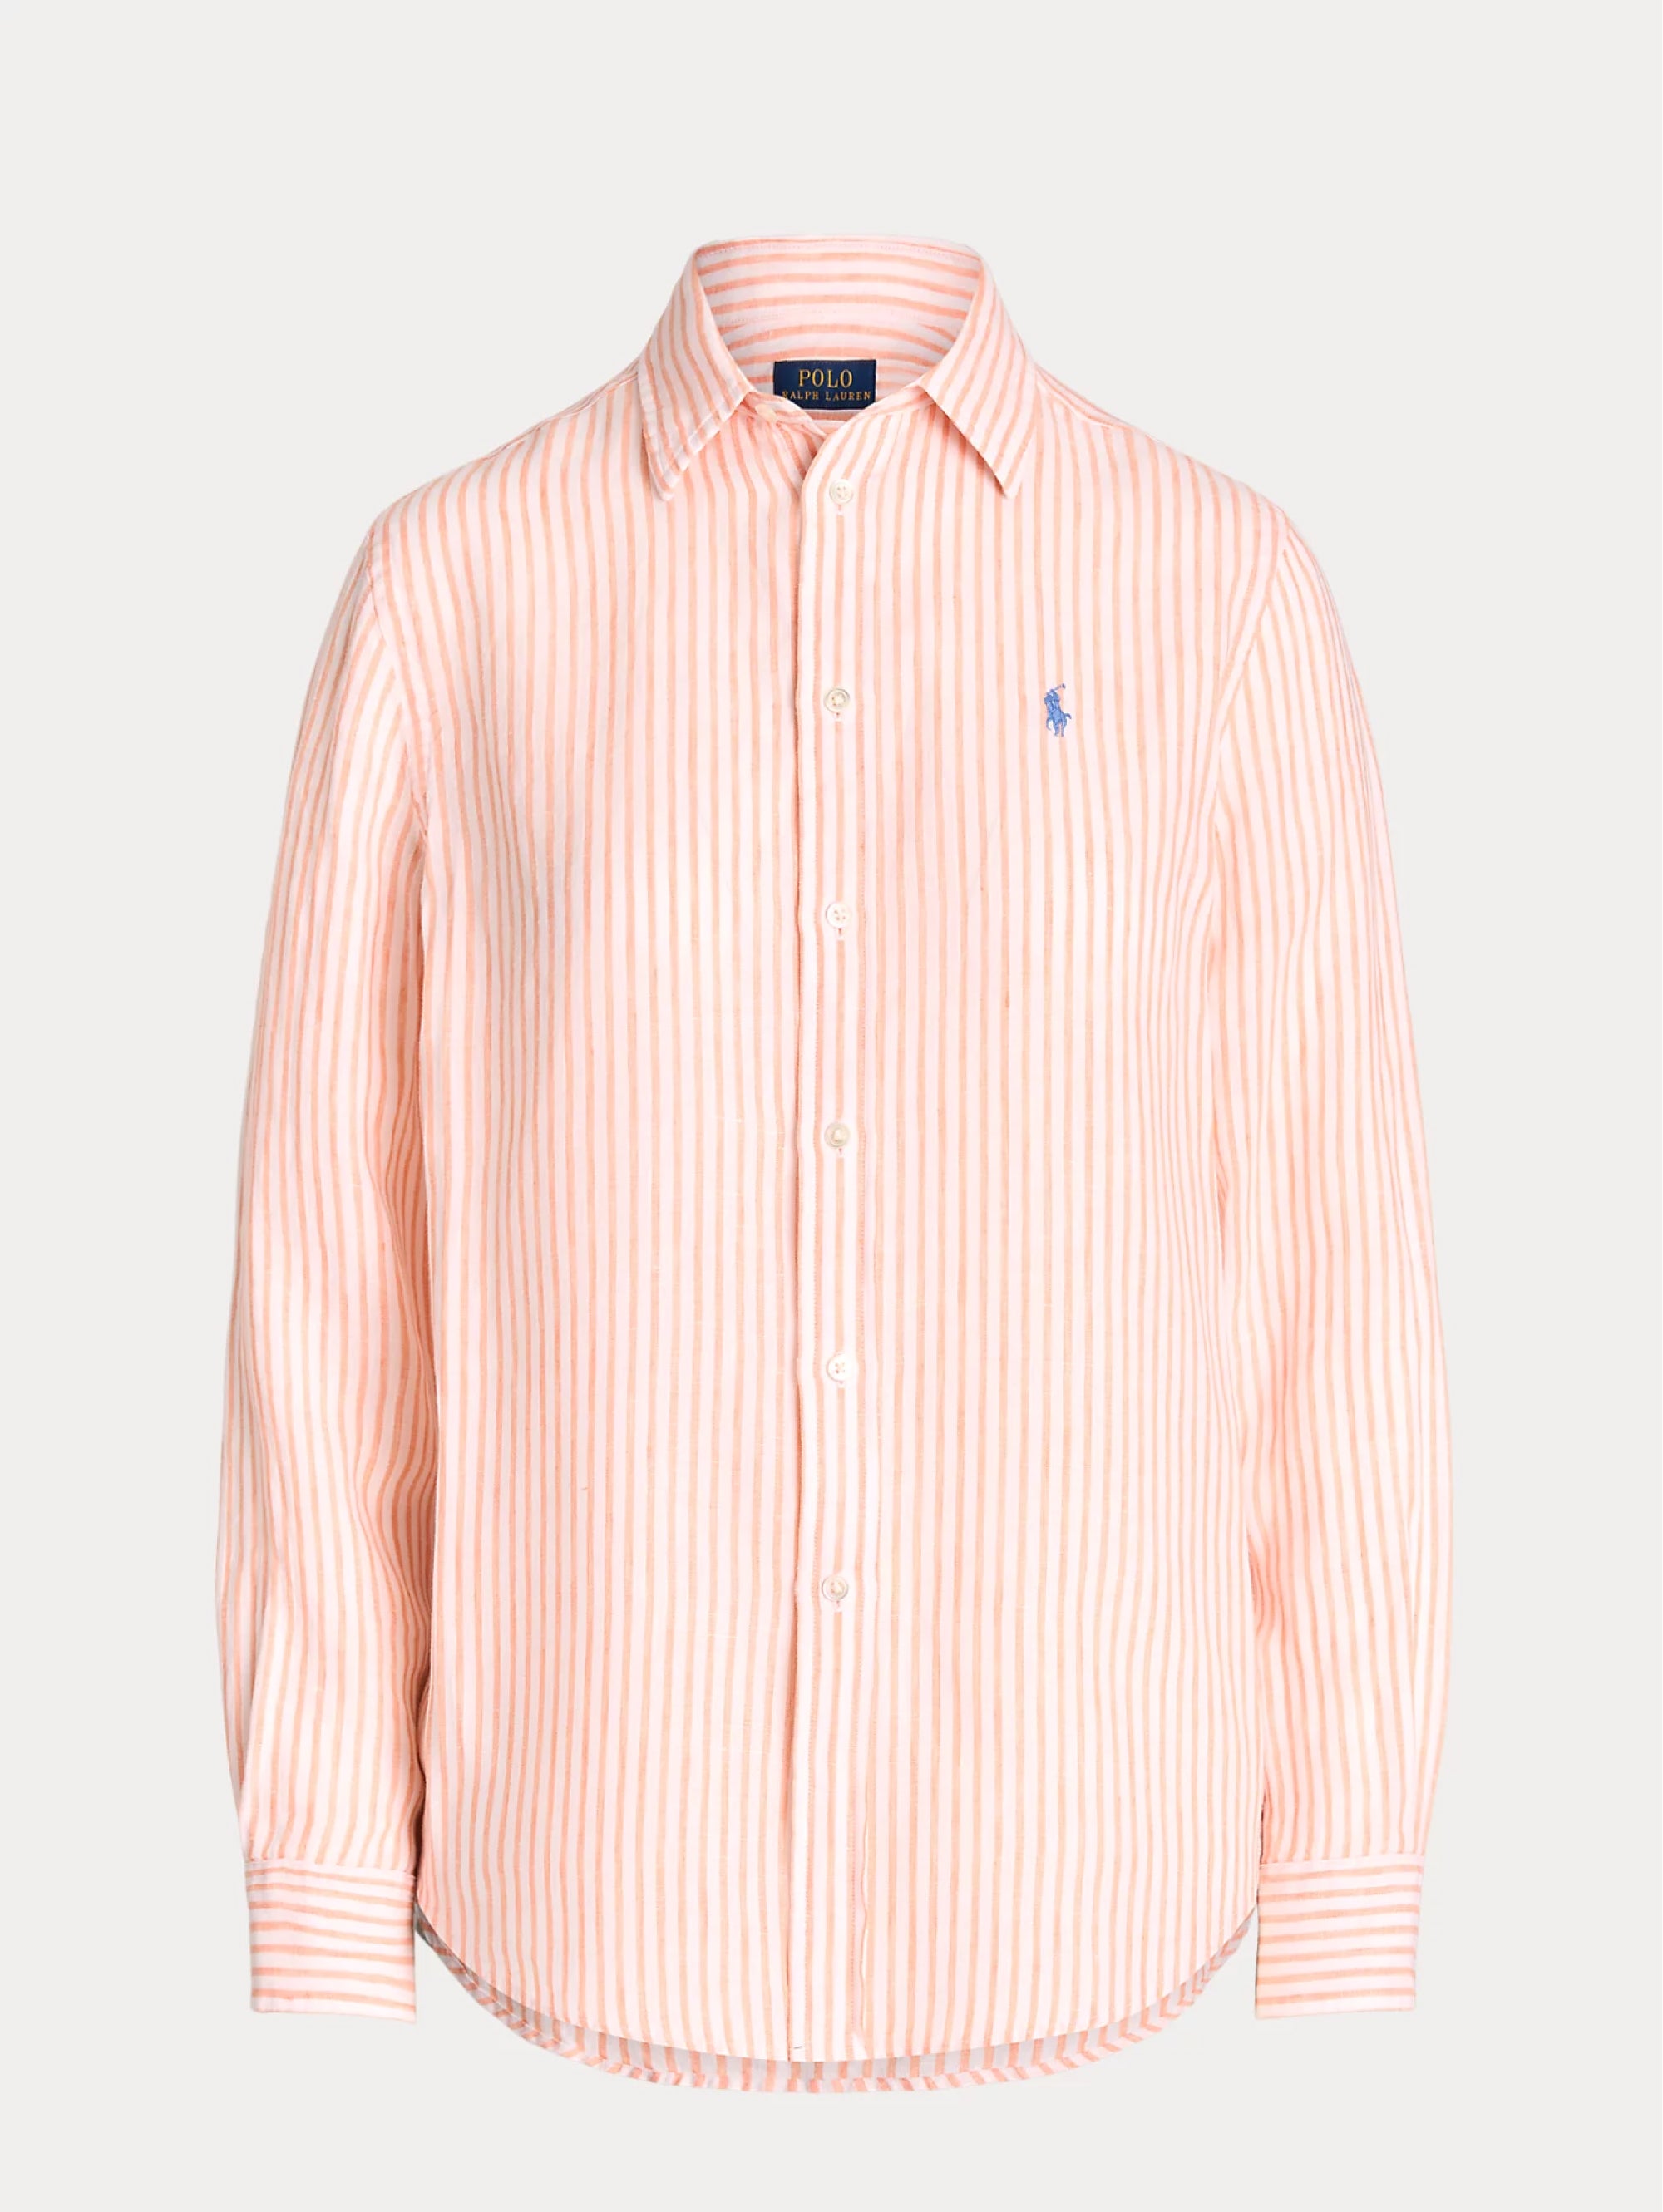 Orange/White Linen Striped Shirt